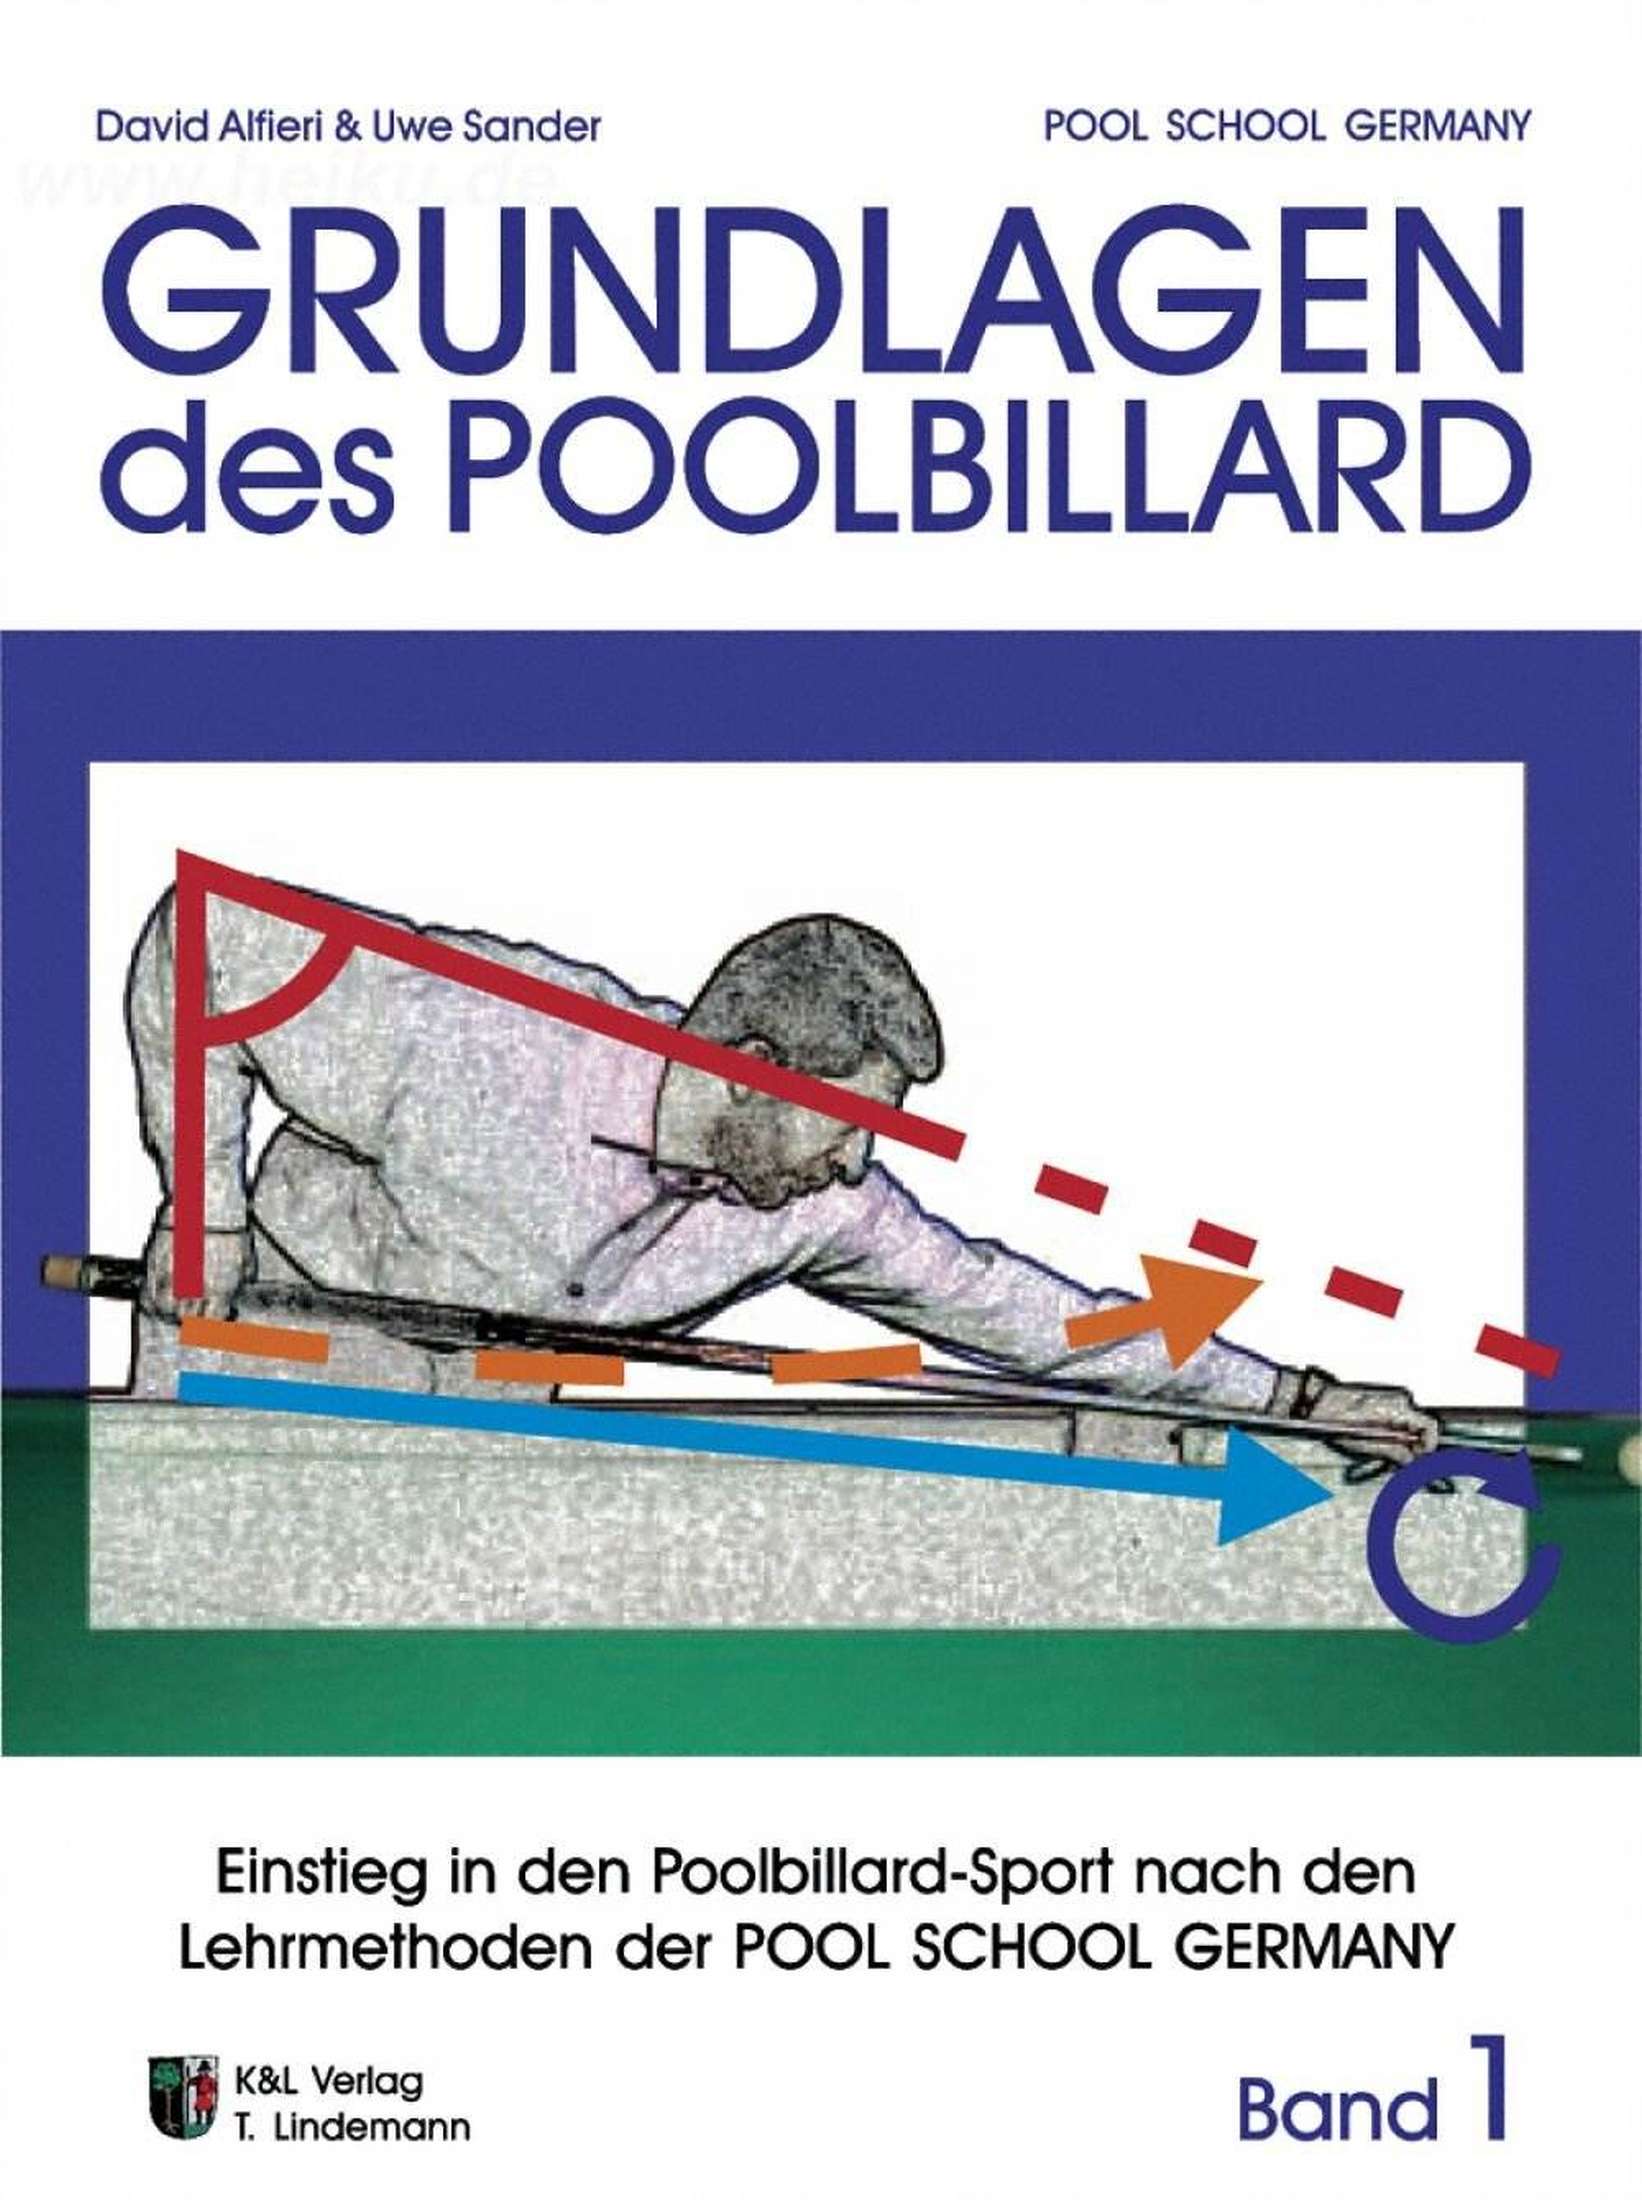 Book Basics of Pool-1